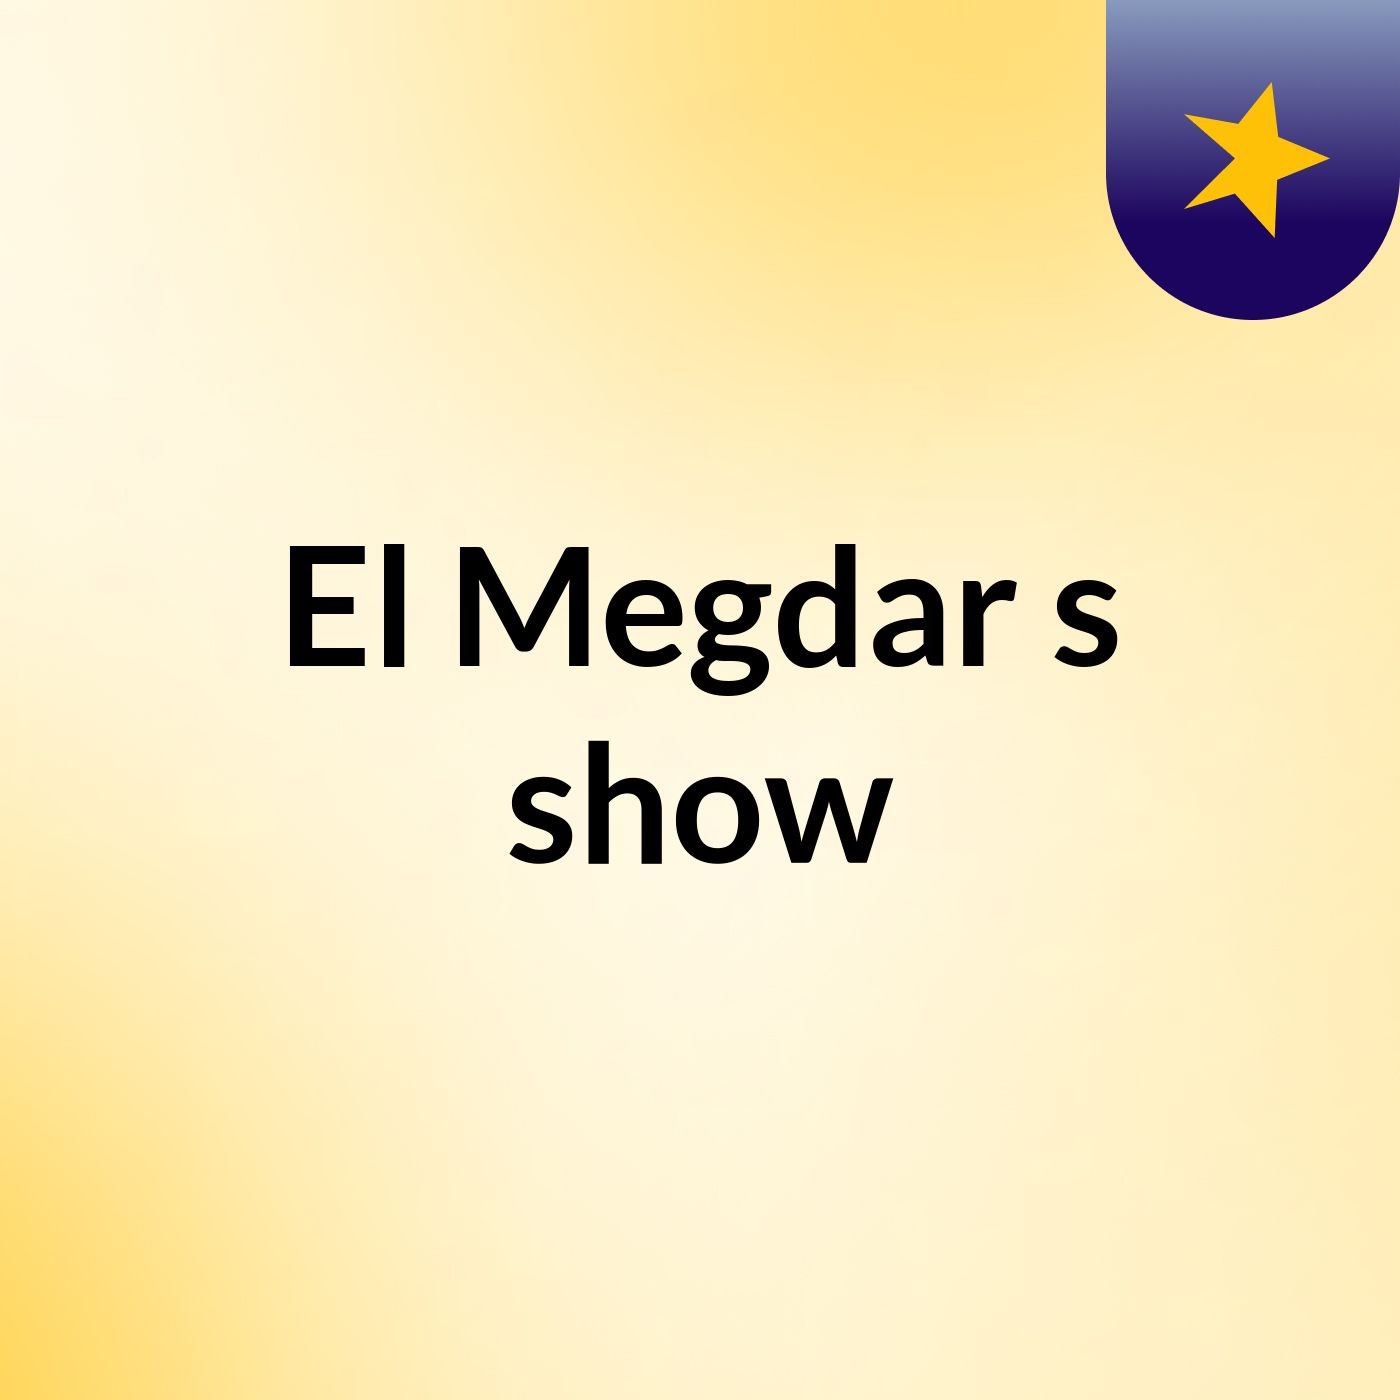 El Megdar's show